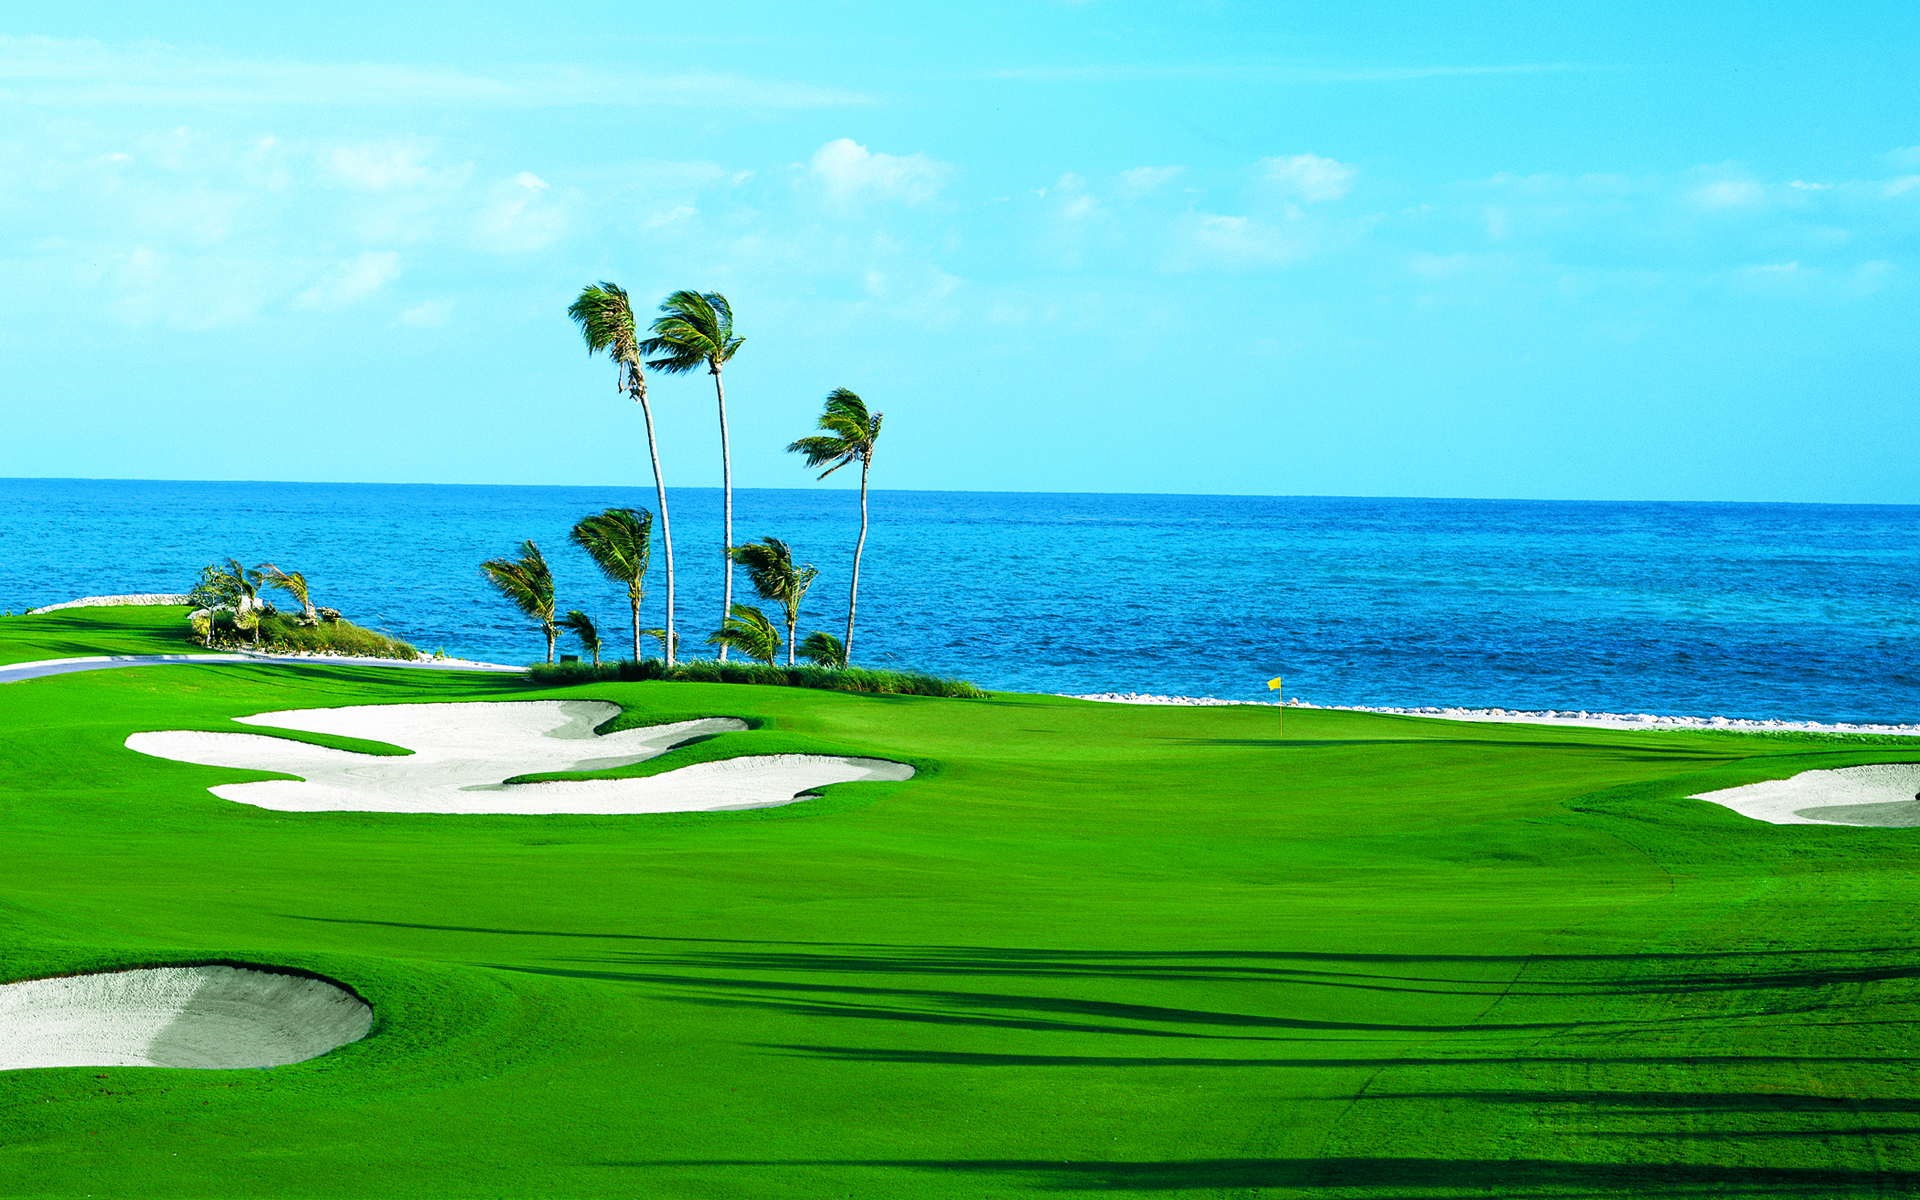 Hình nền sân golf là một lựa chọn tuyệt vời để tạo sự khác biệt cho máy tính của bạn. Những khung cảnh xanh tươi cùng với những gậy golf đẹp mắt sẽ mang lại cho bạn cảm giác thư giãn và thoải mái sau những giờ học tập và làm việc căng thẳng.